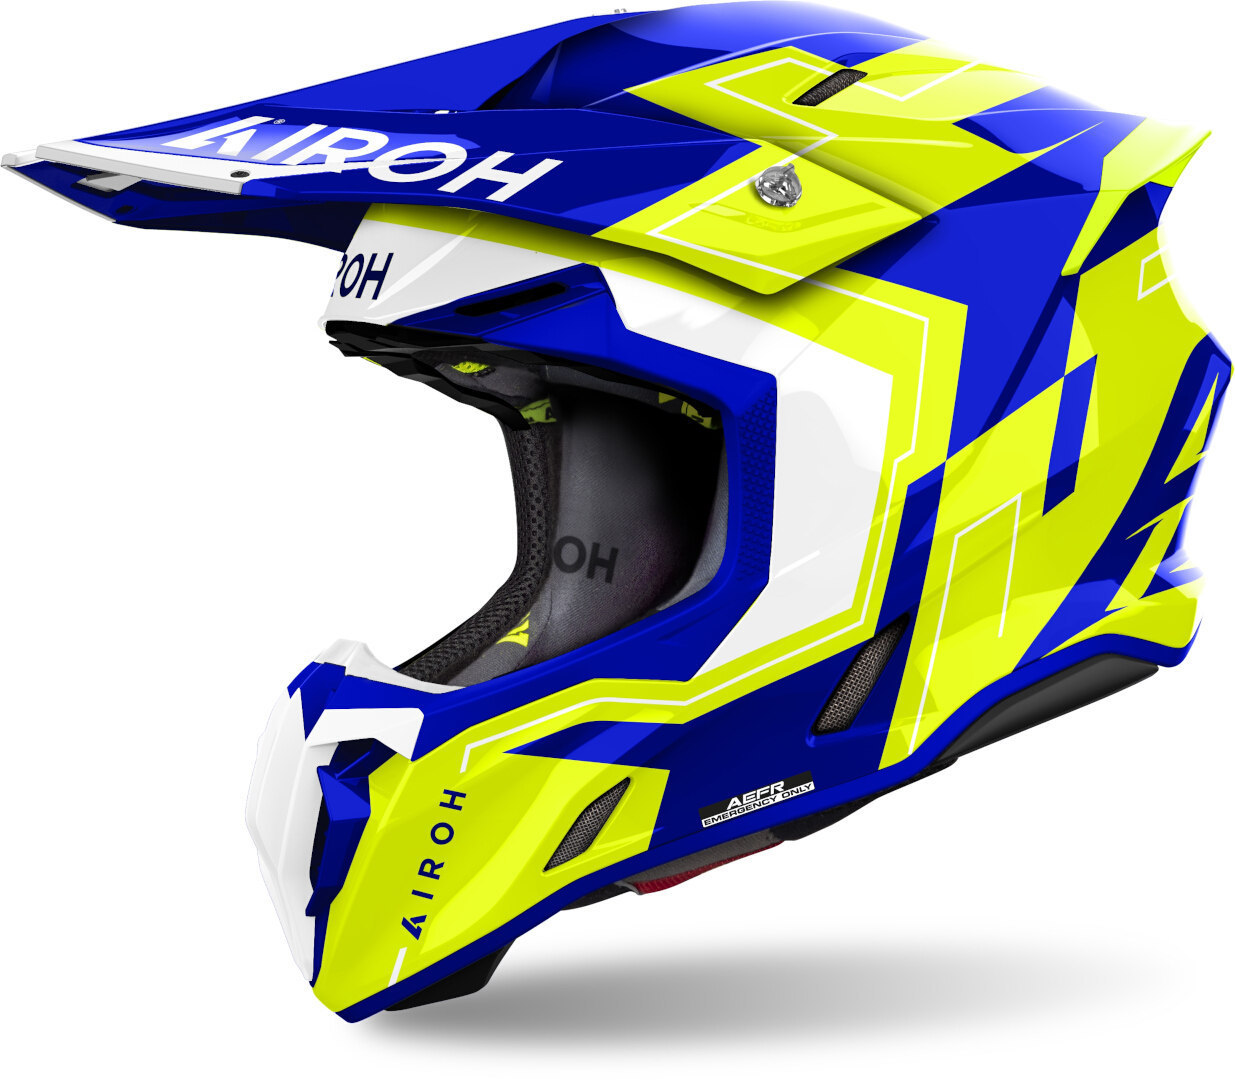 Airoh Twist 3 Dizzy Motocross Helm, blau-gelb, Größe S